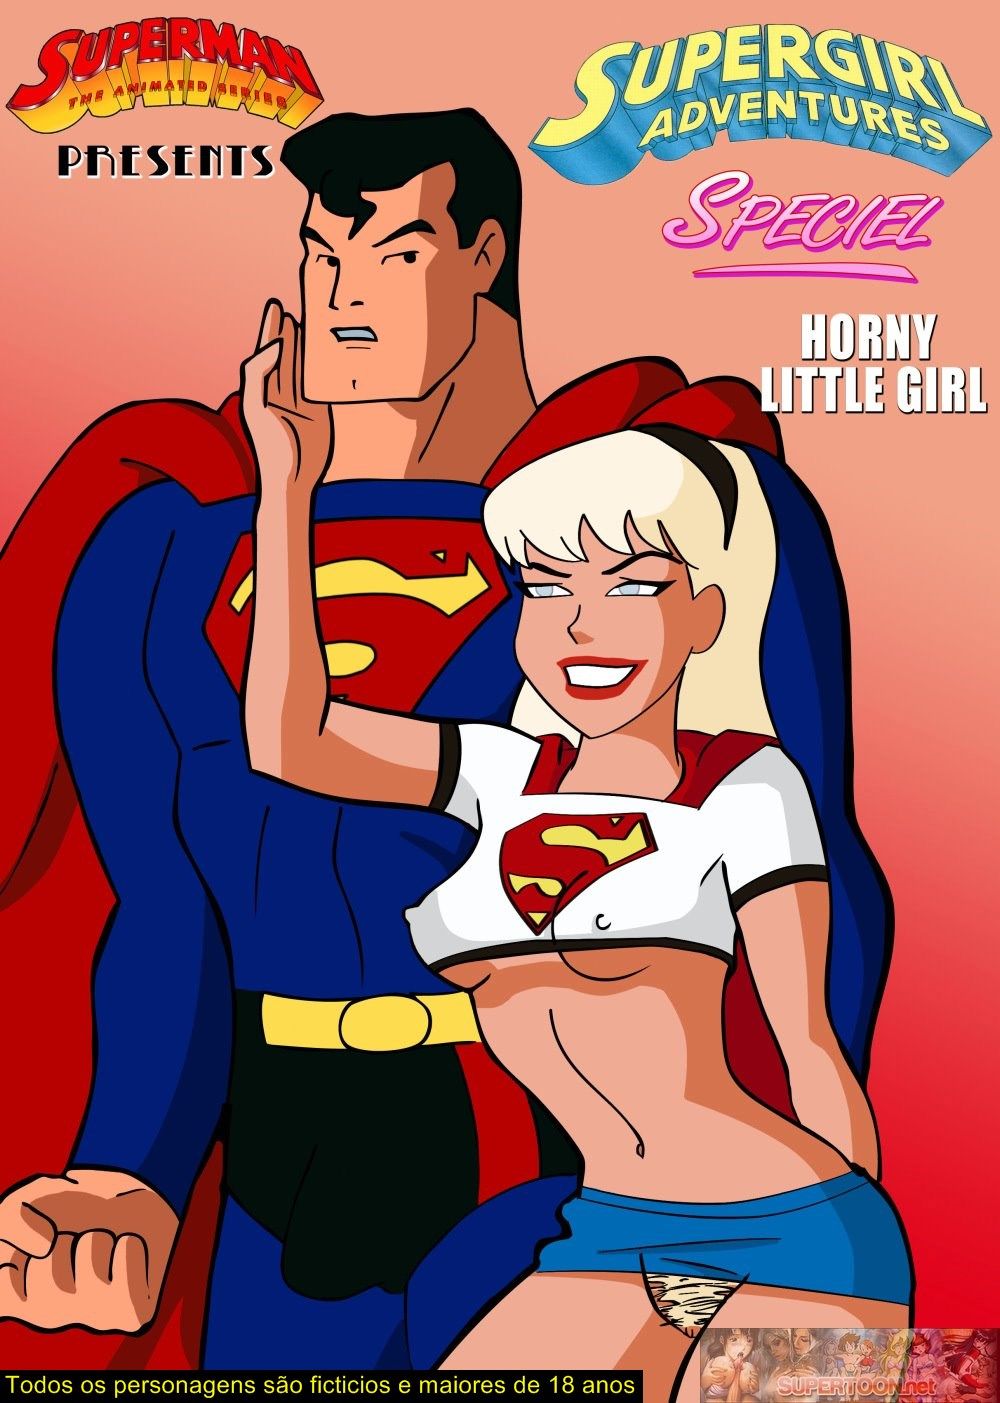 Supergirl fodendo com o Super Man